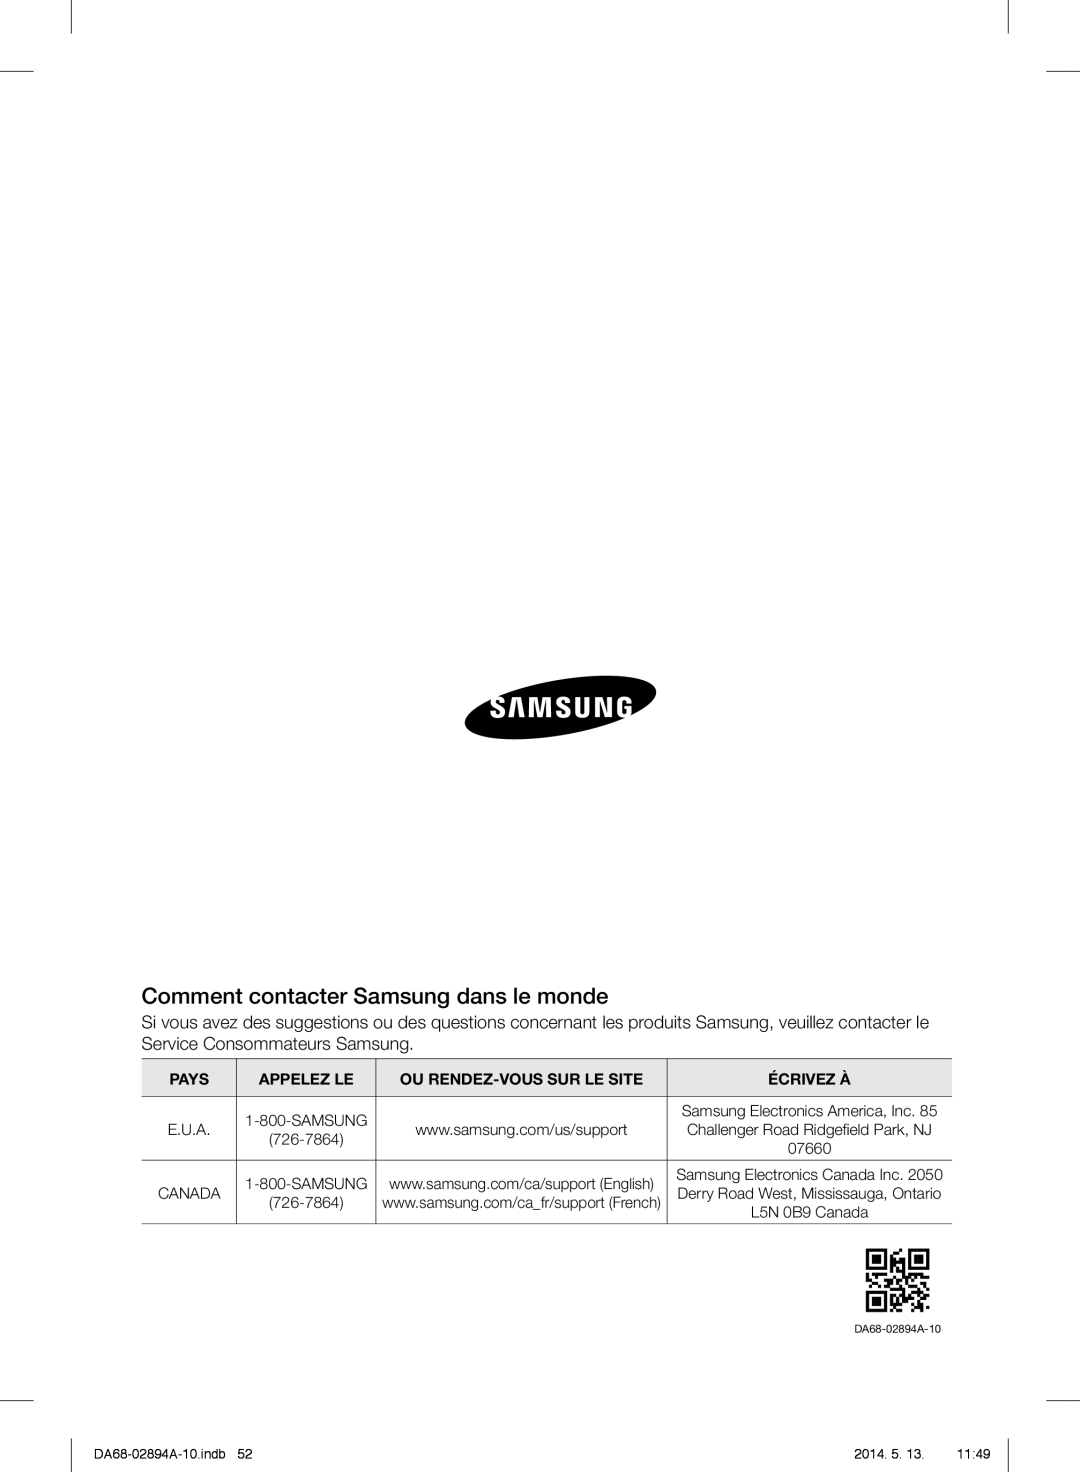 Samsung RF31FMESBSR Comment contacter Samsung dans le monde, Pays, Appelez Le, Ou Rendez-Voussur Le Site, Écrivez À 